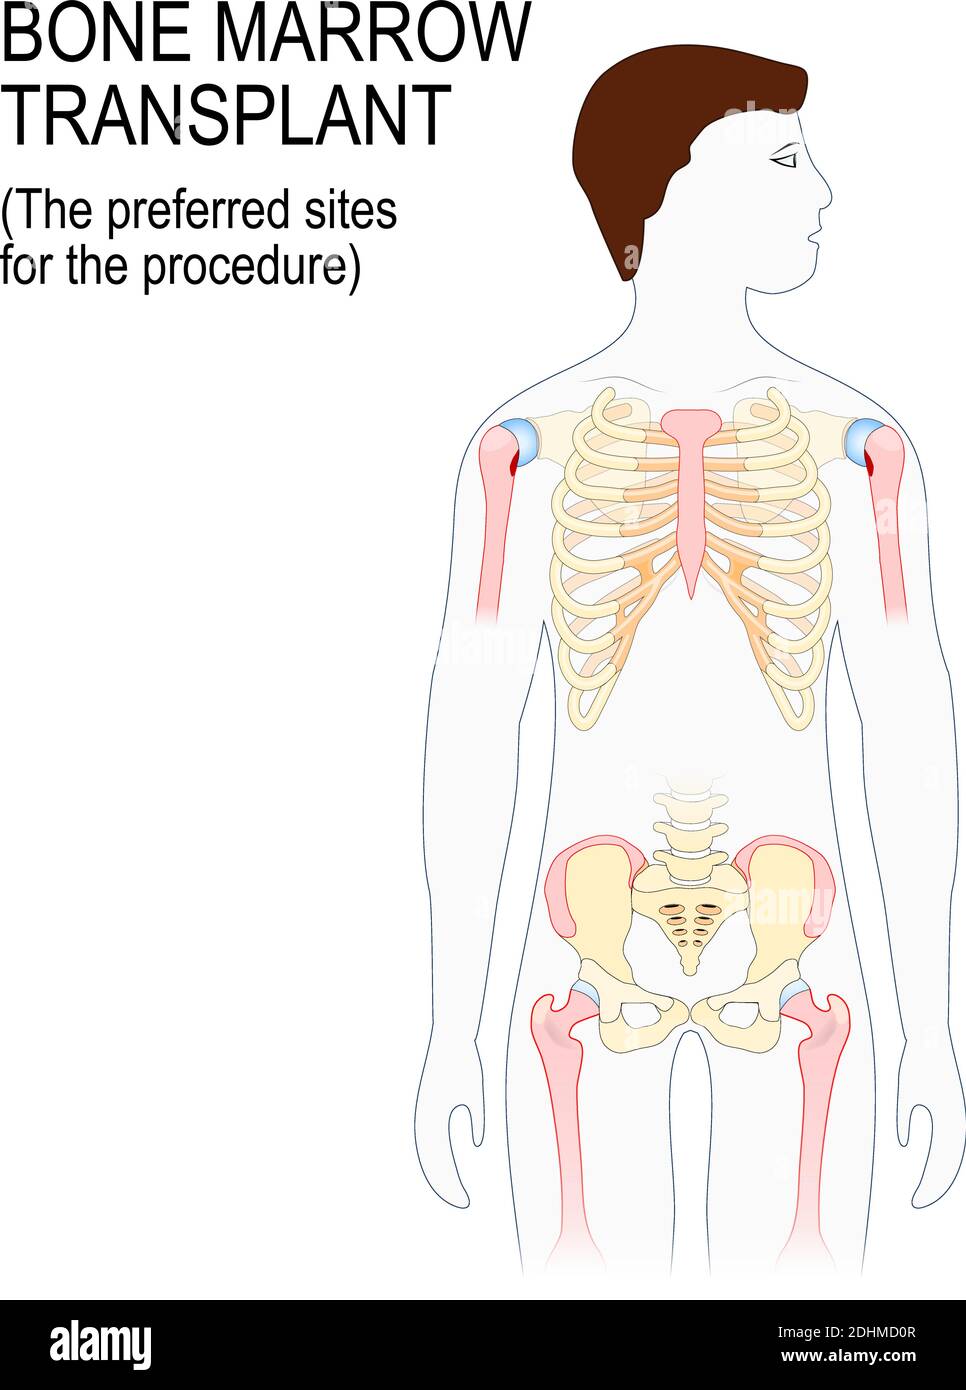 trapianto di midollo osseo. I siti preferiti per la procedura di trapianto (sterno, cresta iliaca, tibia o femore). Silhouette uomo con evidenziato Illustrazione Vettoriale